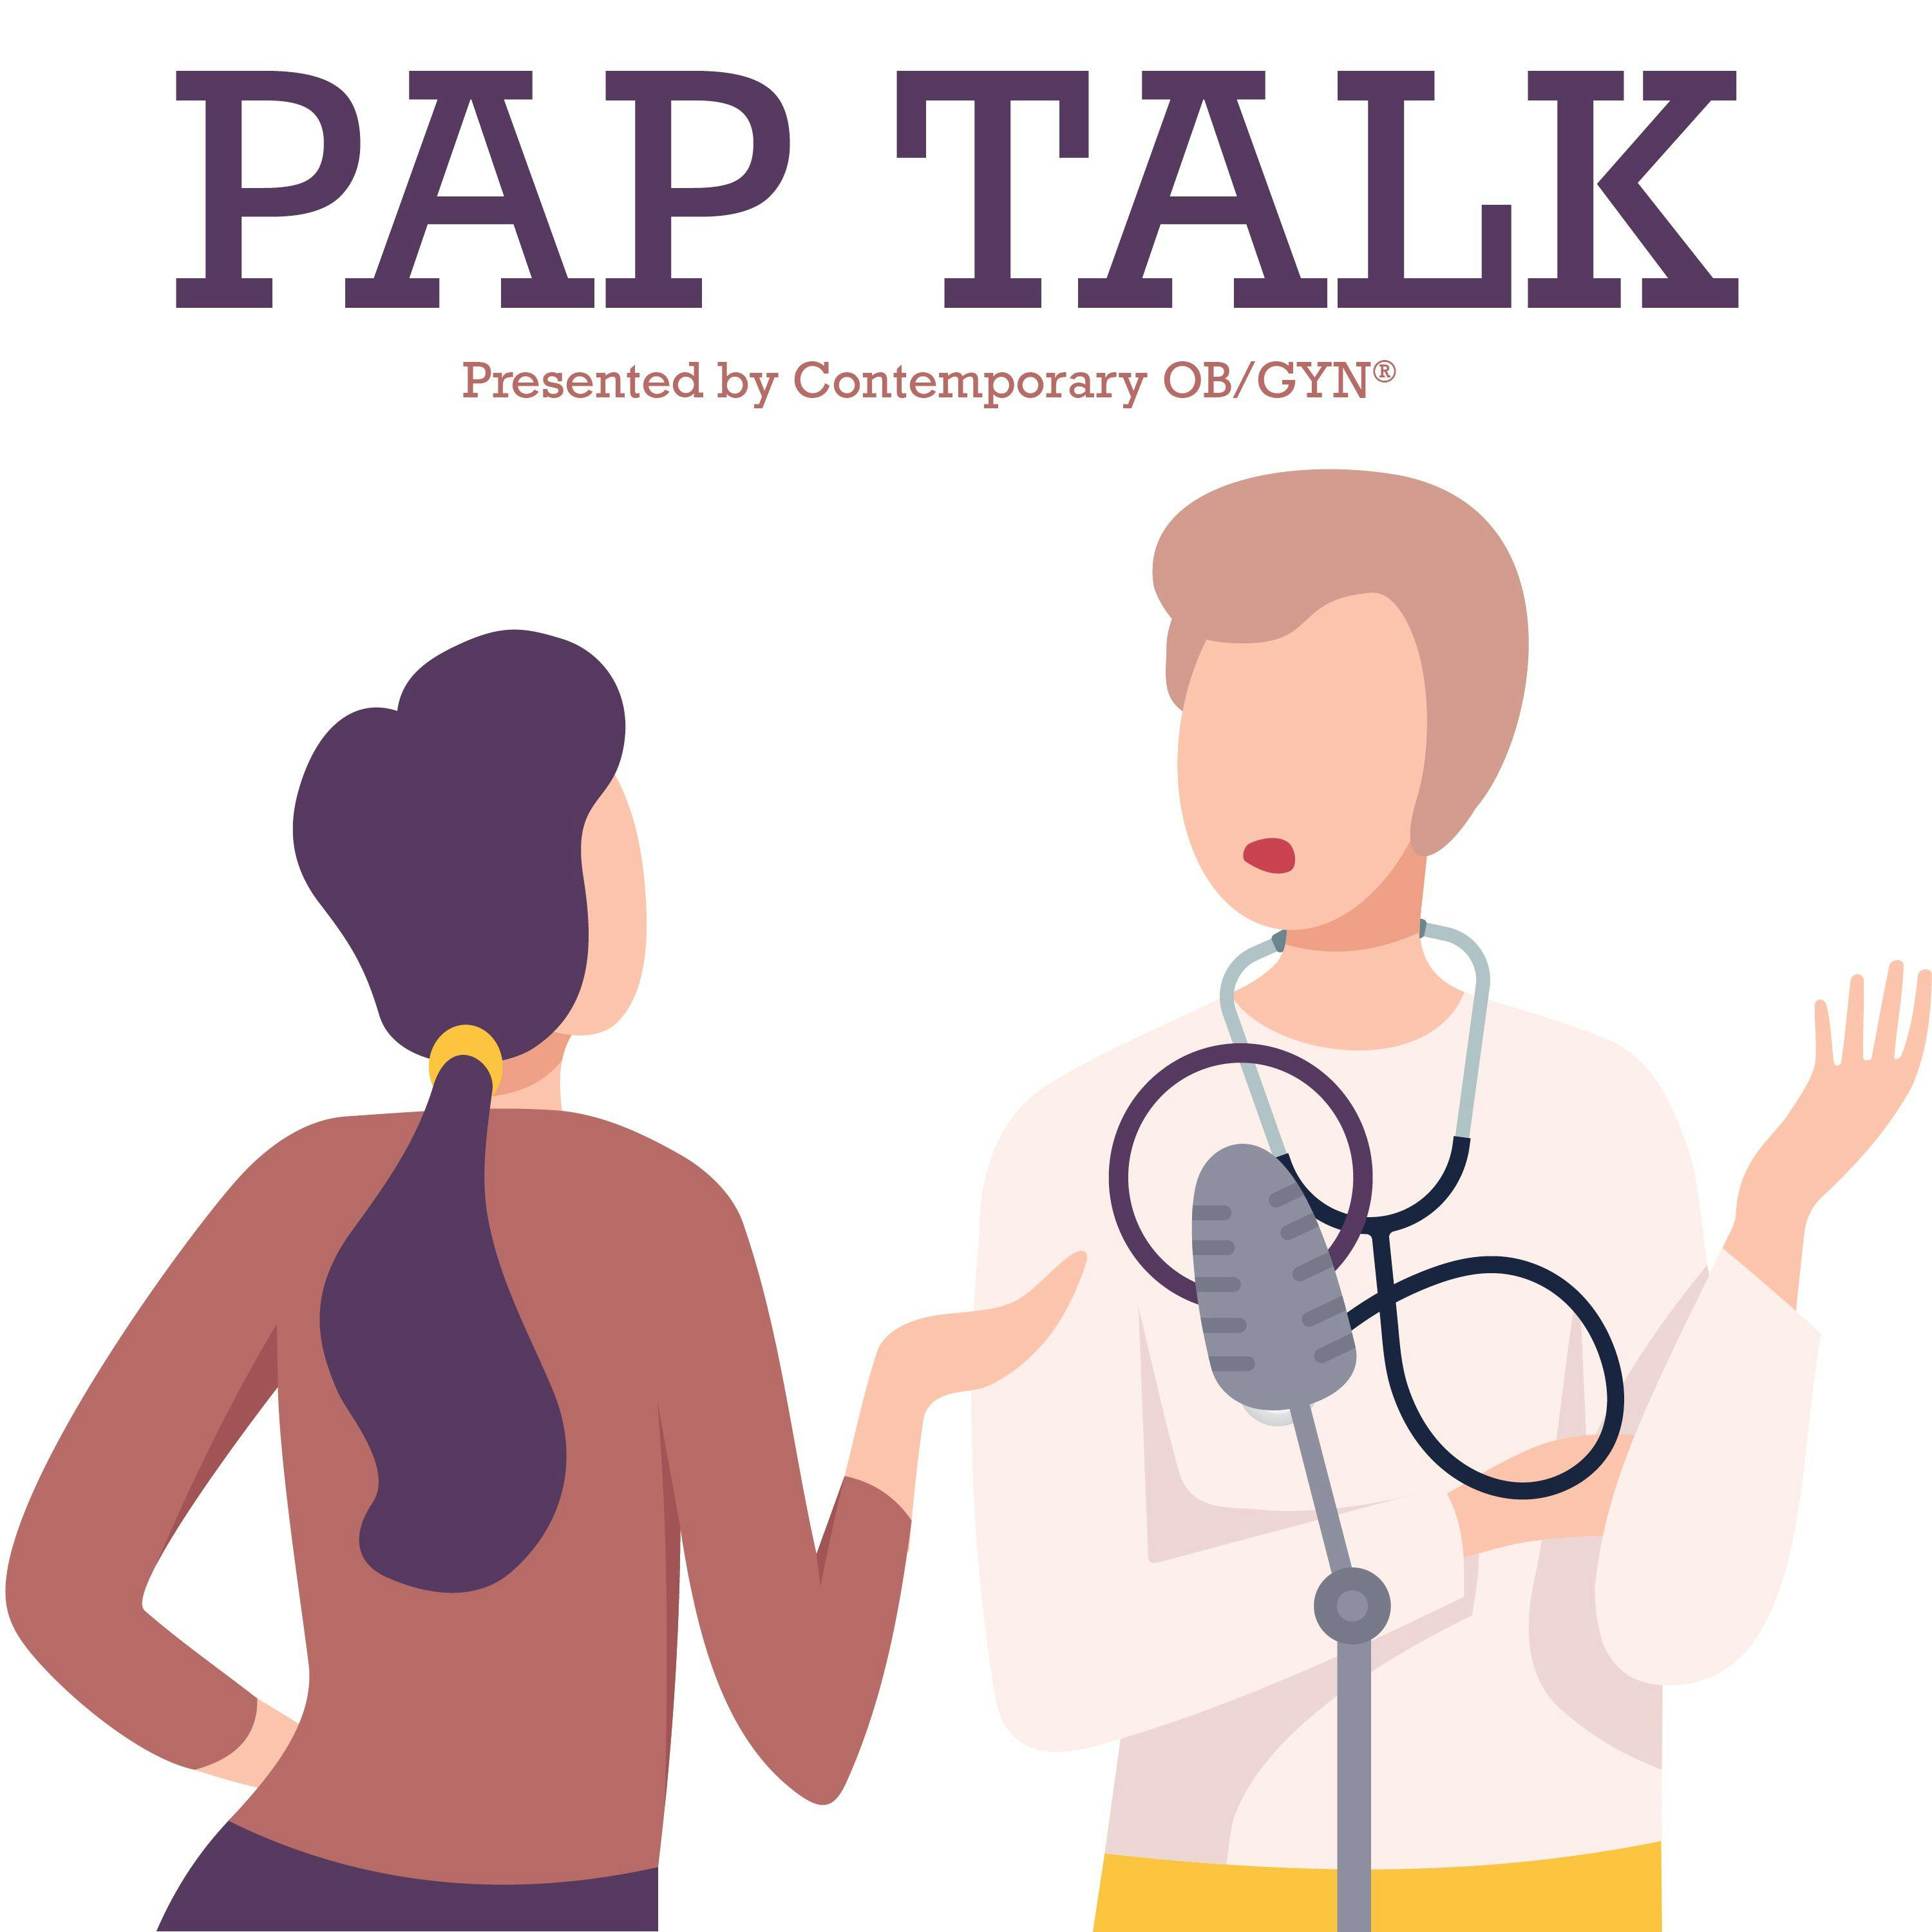 Introducing Pap Talk